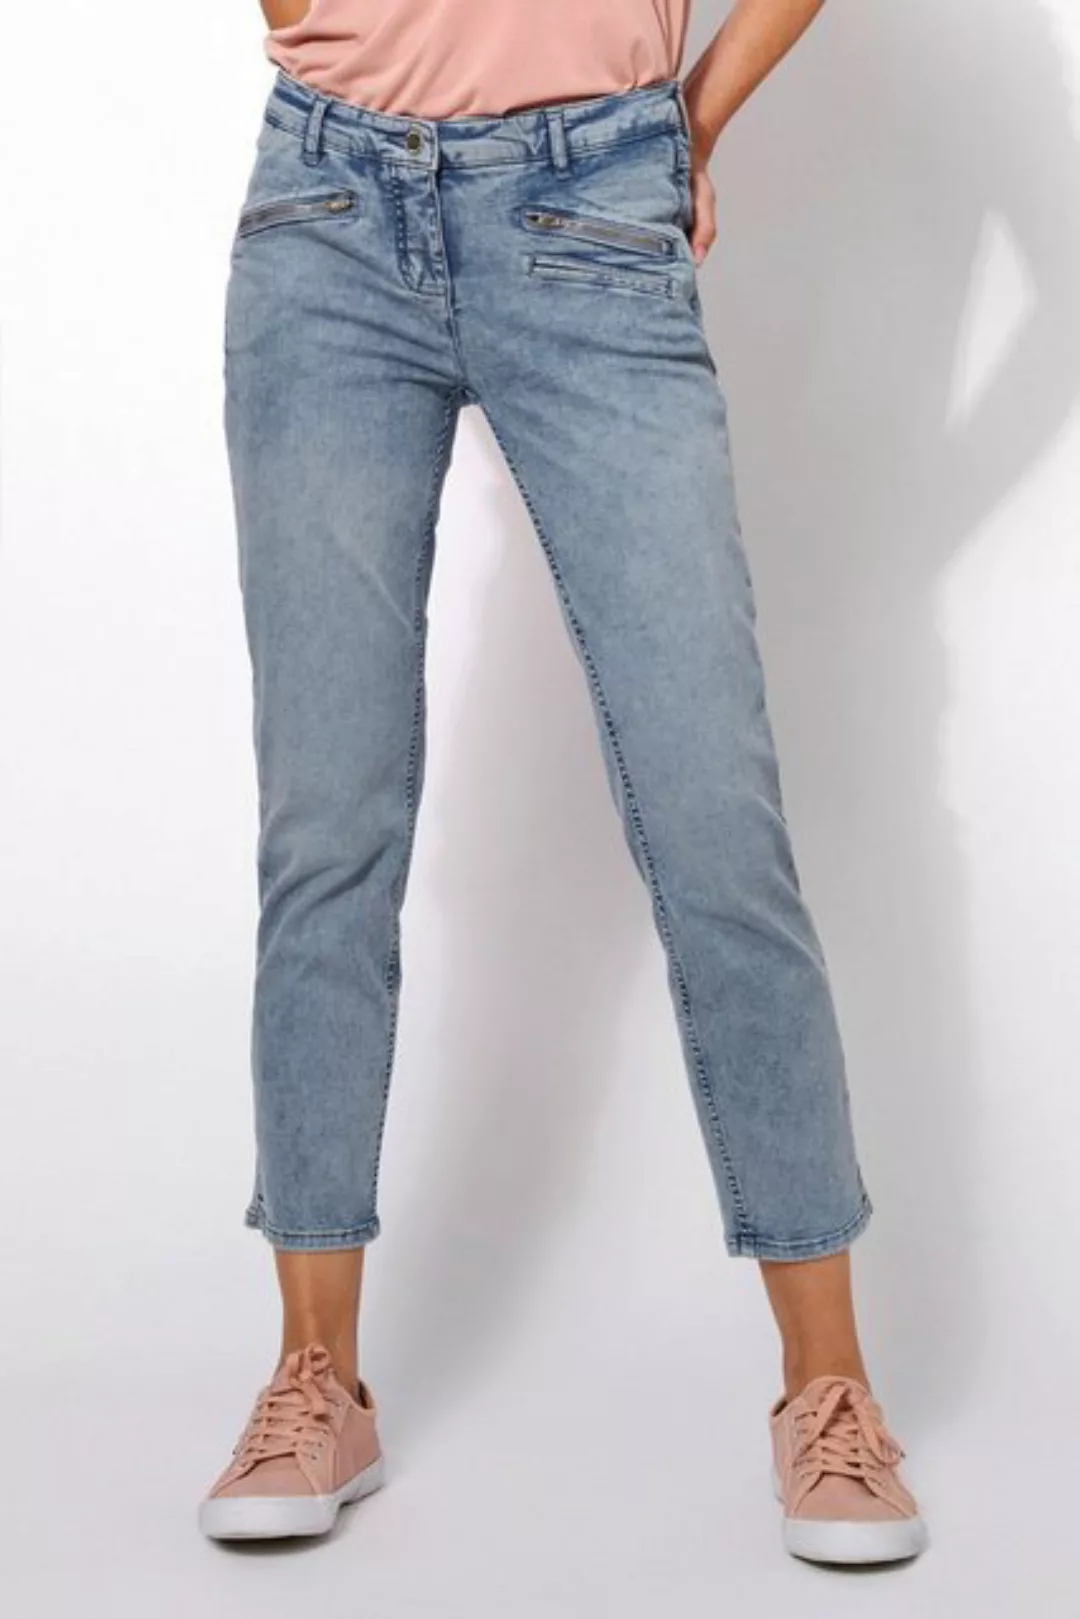 TONI 7/8-Jeans Perfect Shape Pocket 7/8 mit schrägen Reißverschlusstaschen günstig online kaufen